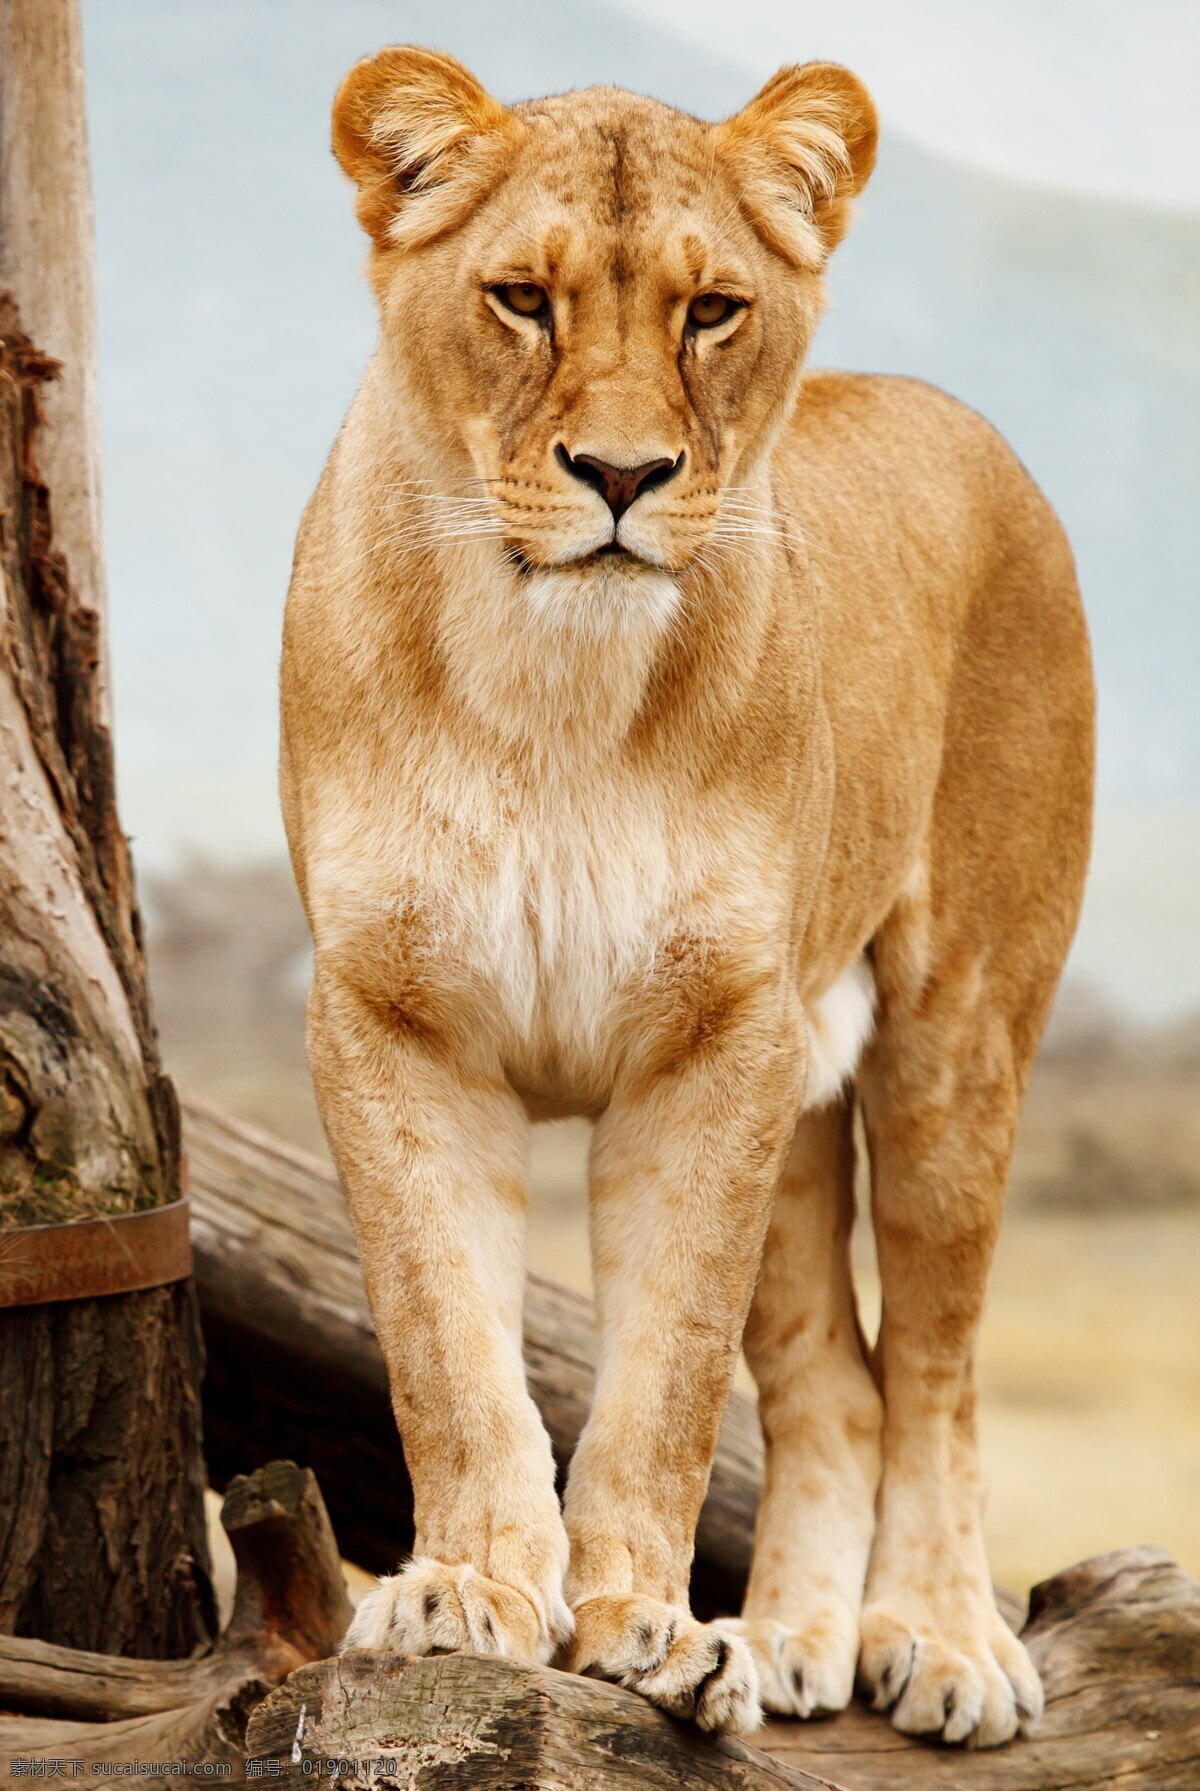 猛兽 雌性 狮子 雌性狮子 摄影图片 非洲动物 动物世界 野兽图片 生物世界 野生动物